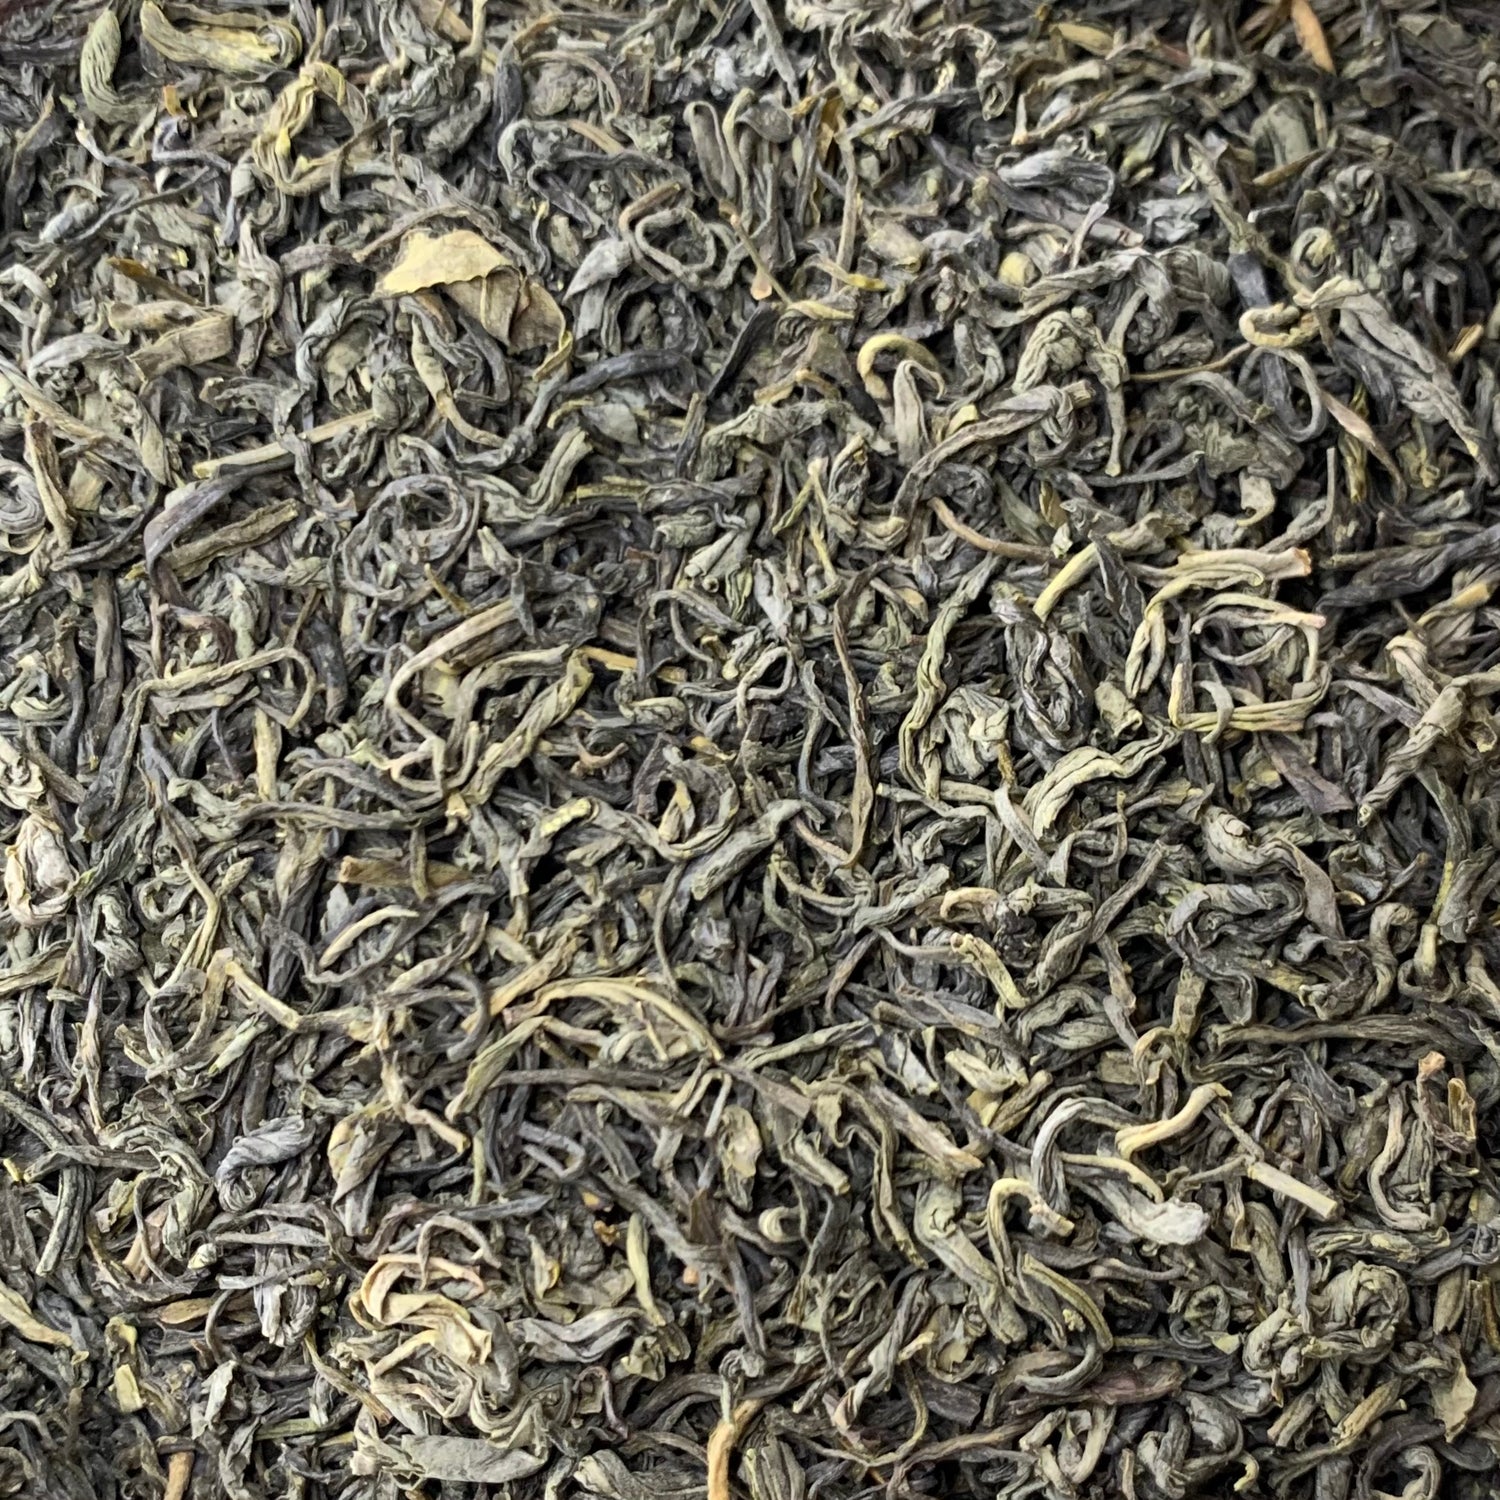 Spring Green Tea (Camellia sinensis)